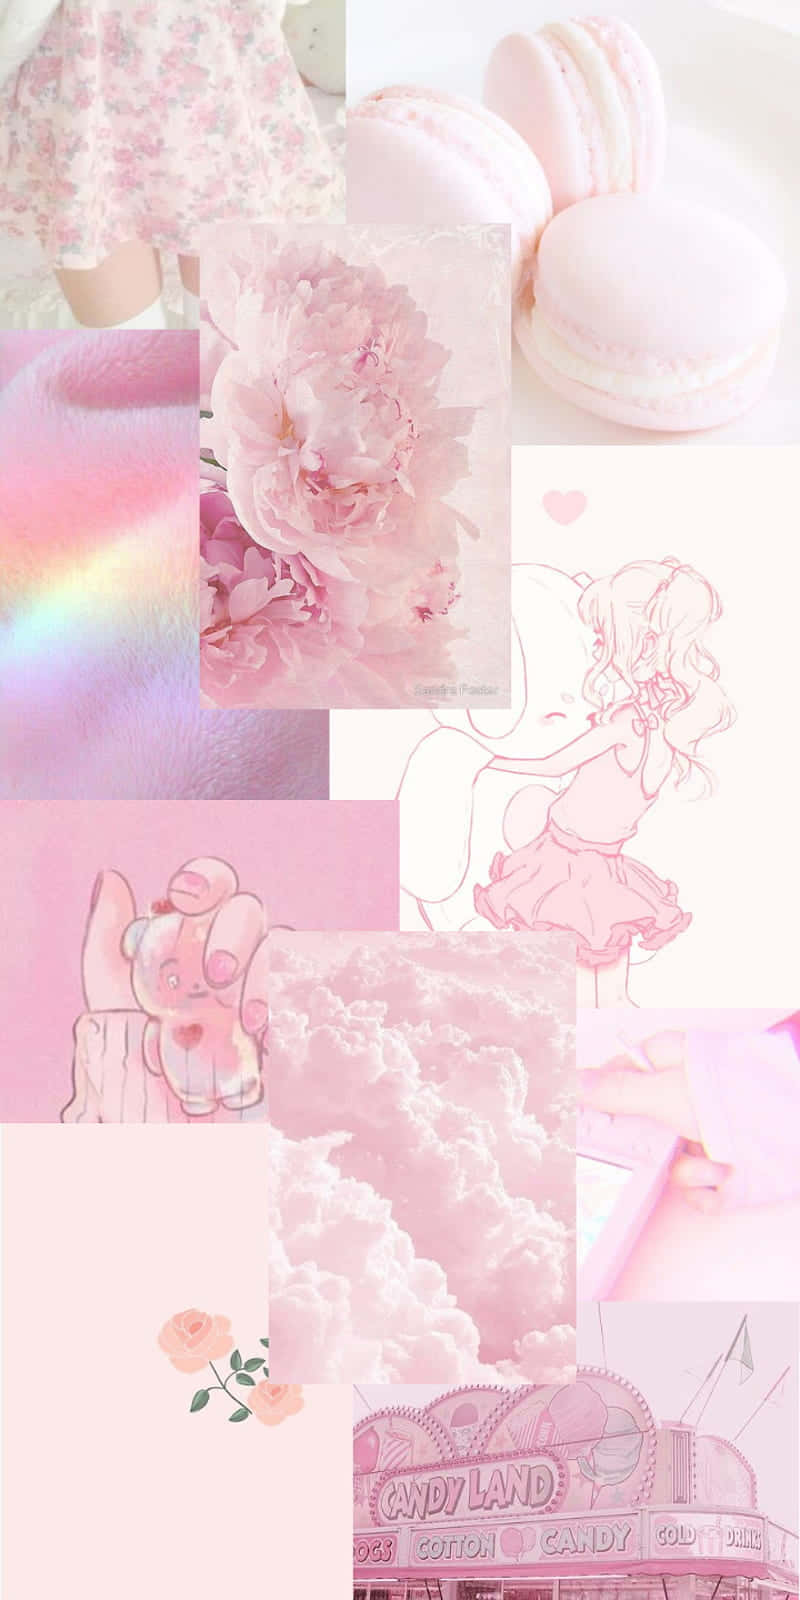 Sfondoestetico Rosa Con Collage Di Macarons E Nuvole